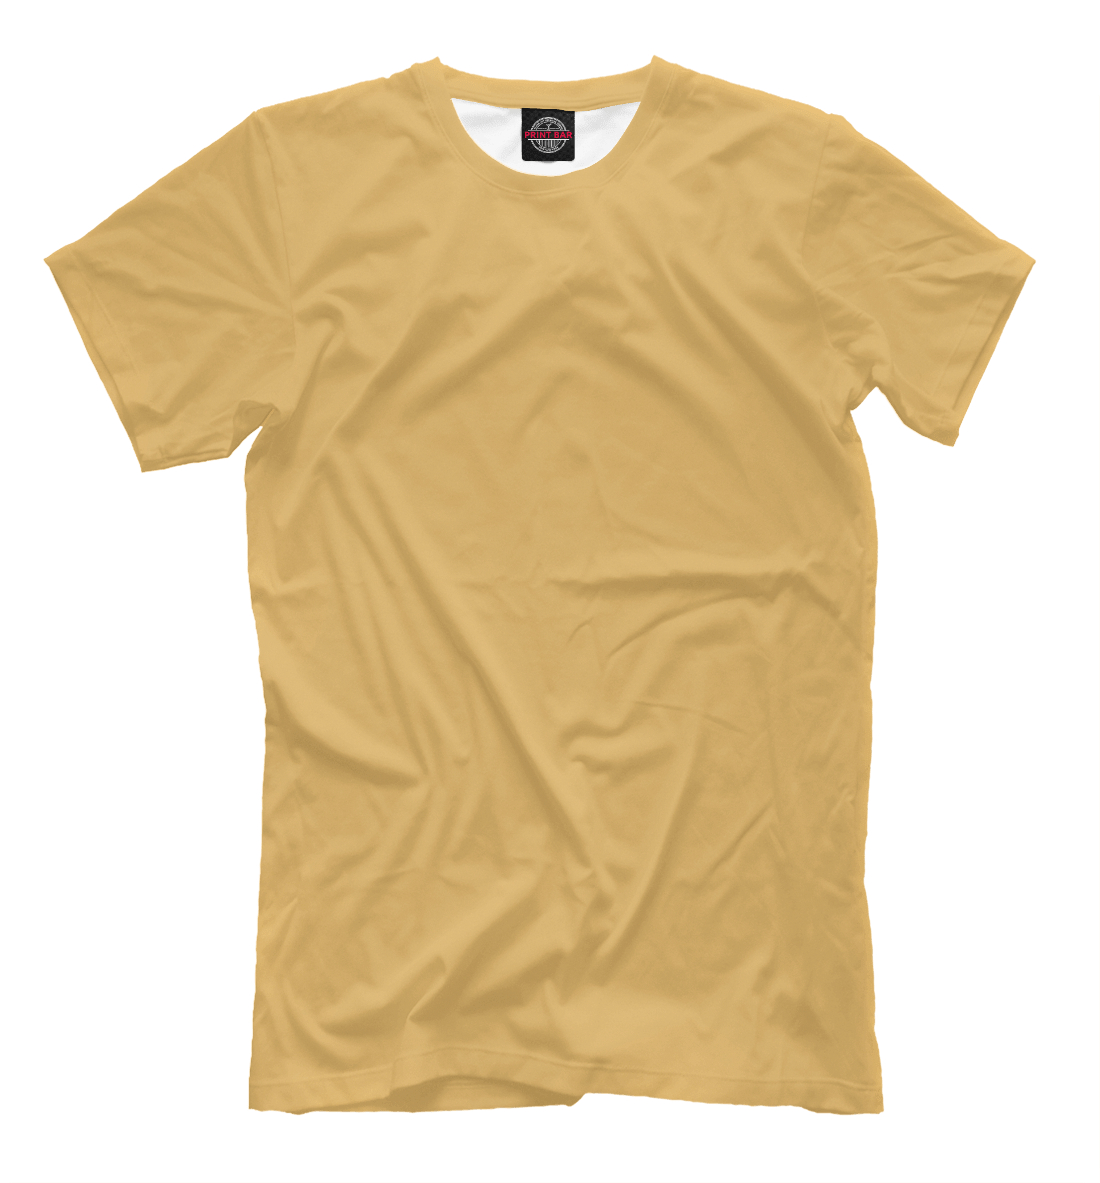 Футболка Цвет Охра желтая для мужчин, артикул: CLR-662247-fut-2mp